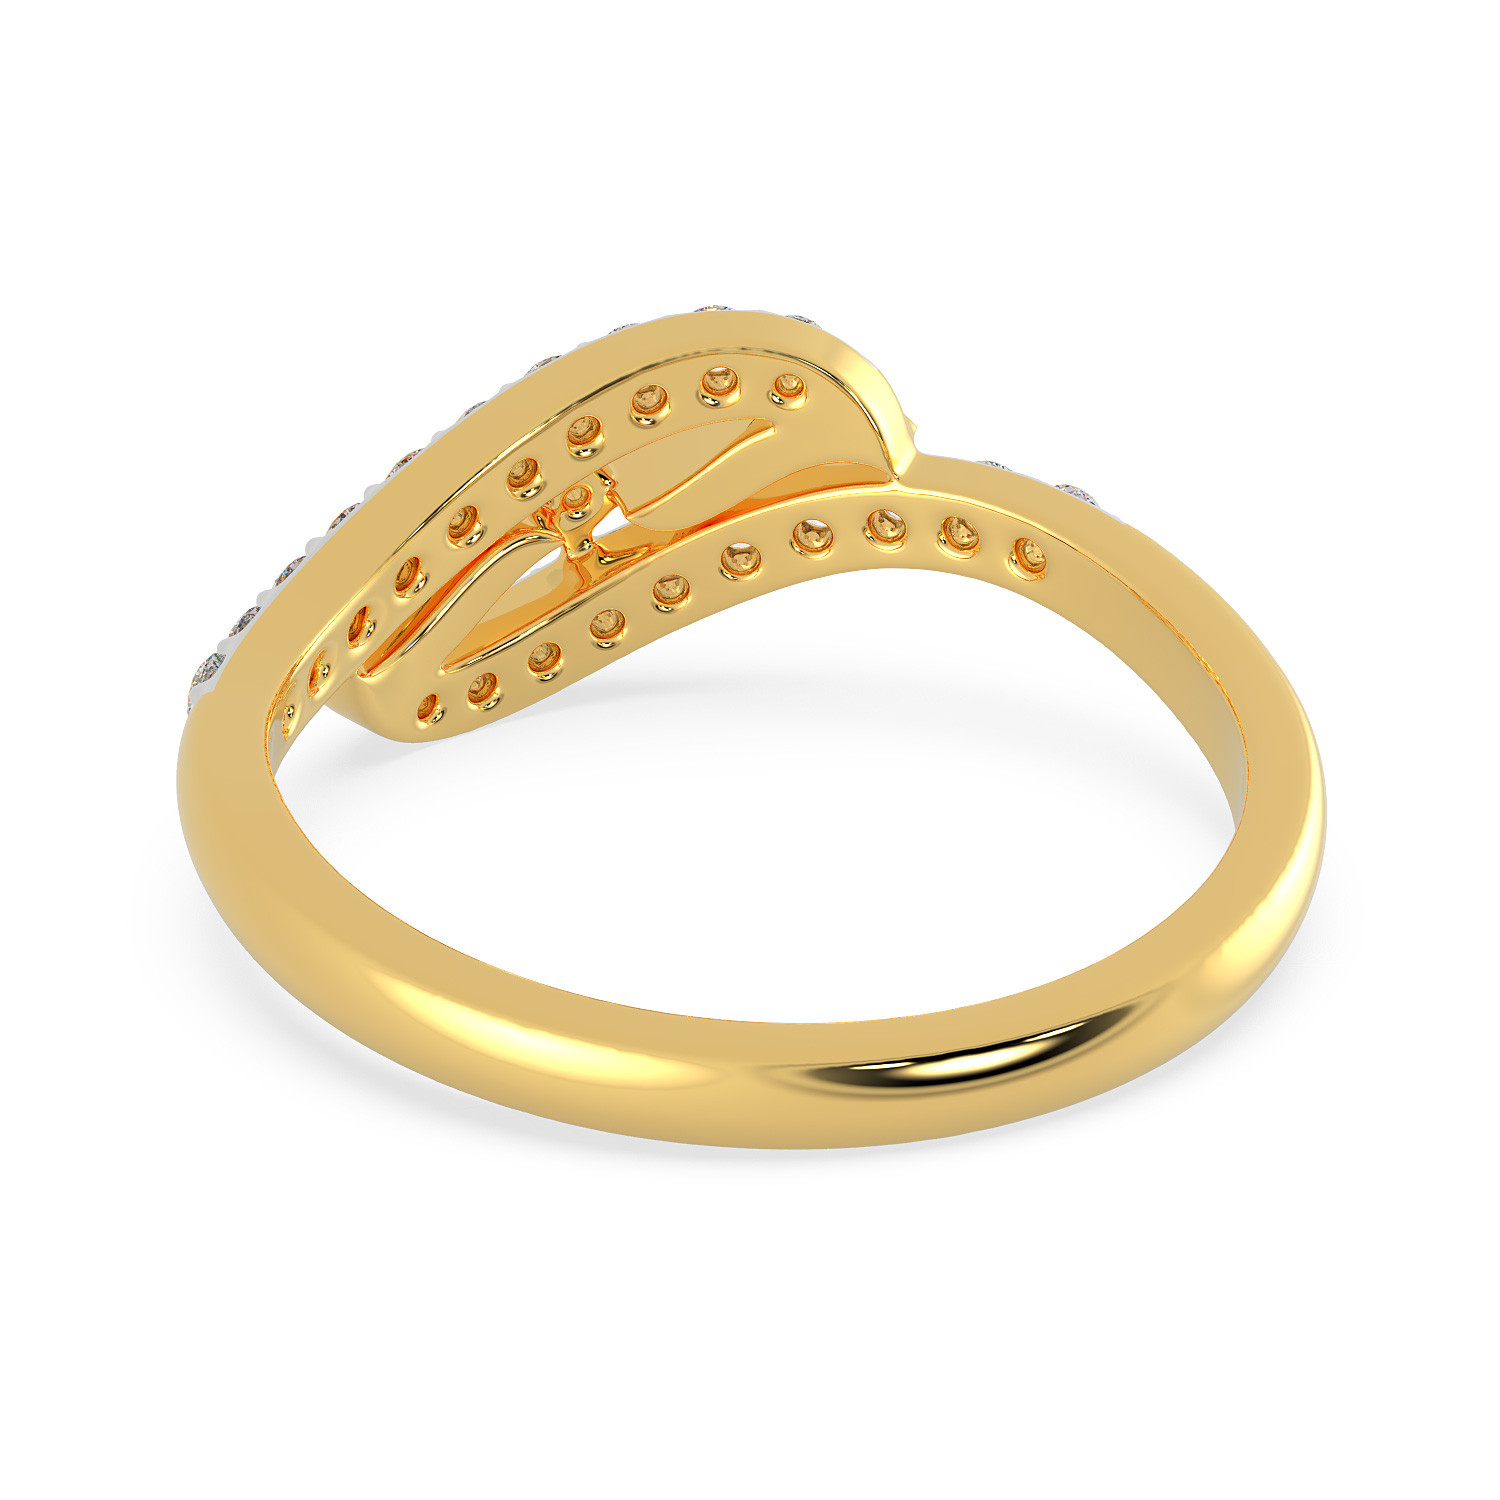 Buy Malabar Gold Ring MHAAAAAAAYJO for Women Online | Malabar Gold ...